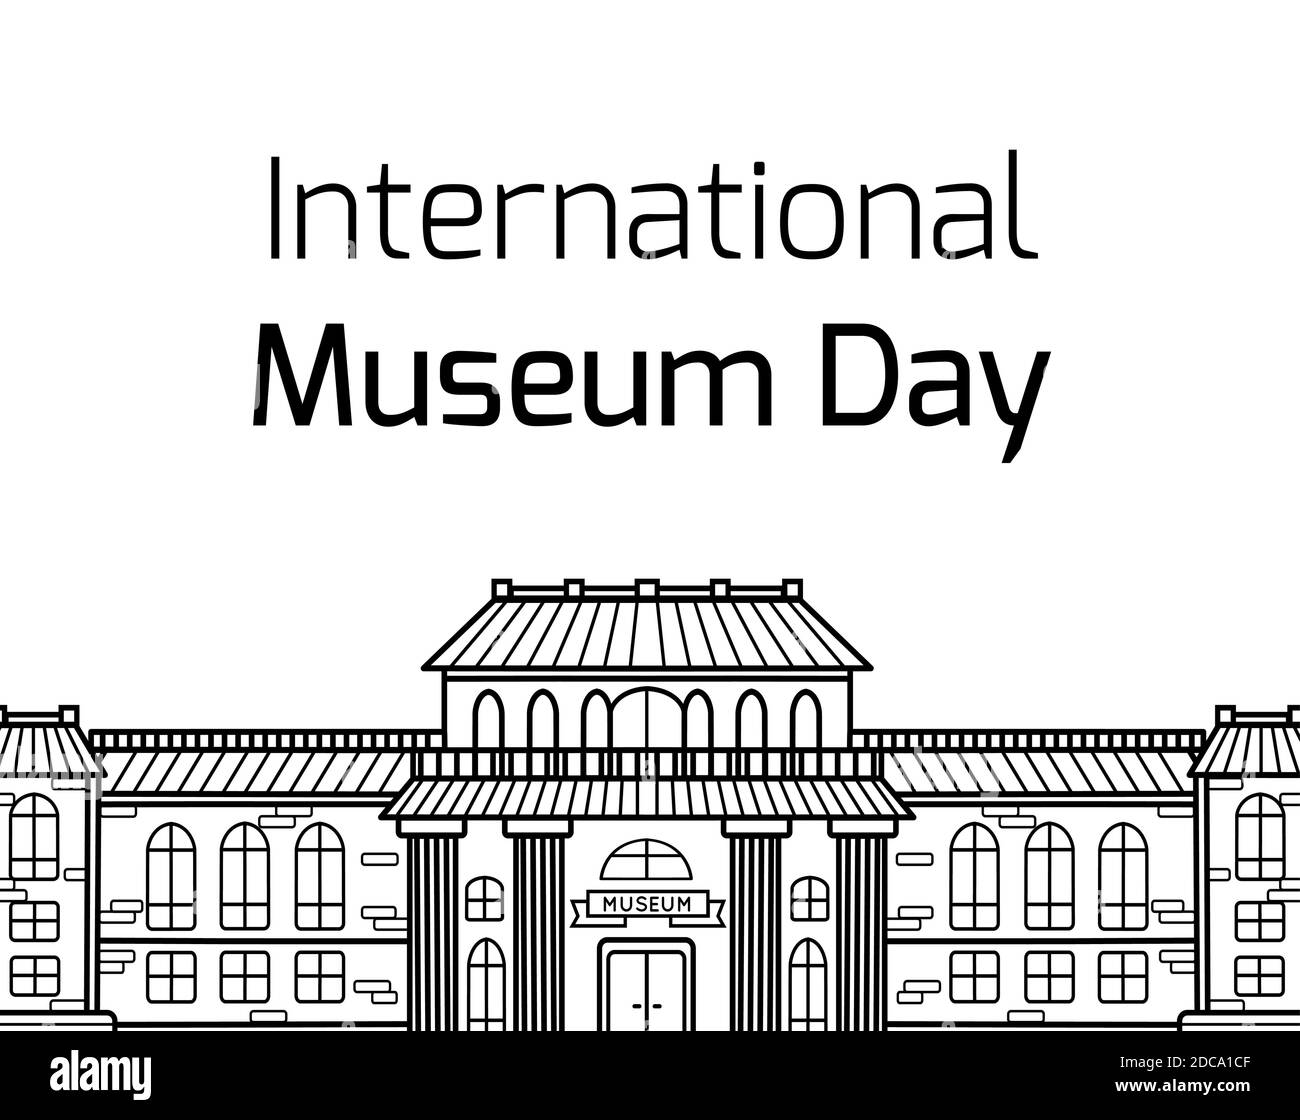 Journée internationale des musées. Dessin de contour de la façade du bâtiment du musée avec lettrage sur fond blanc. Carte horizontale vectorielle pour bannière Illustration de Vecteur